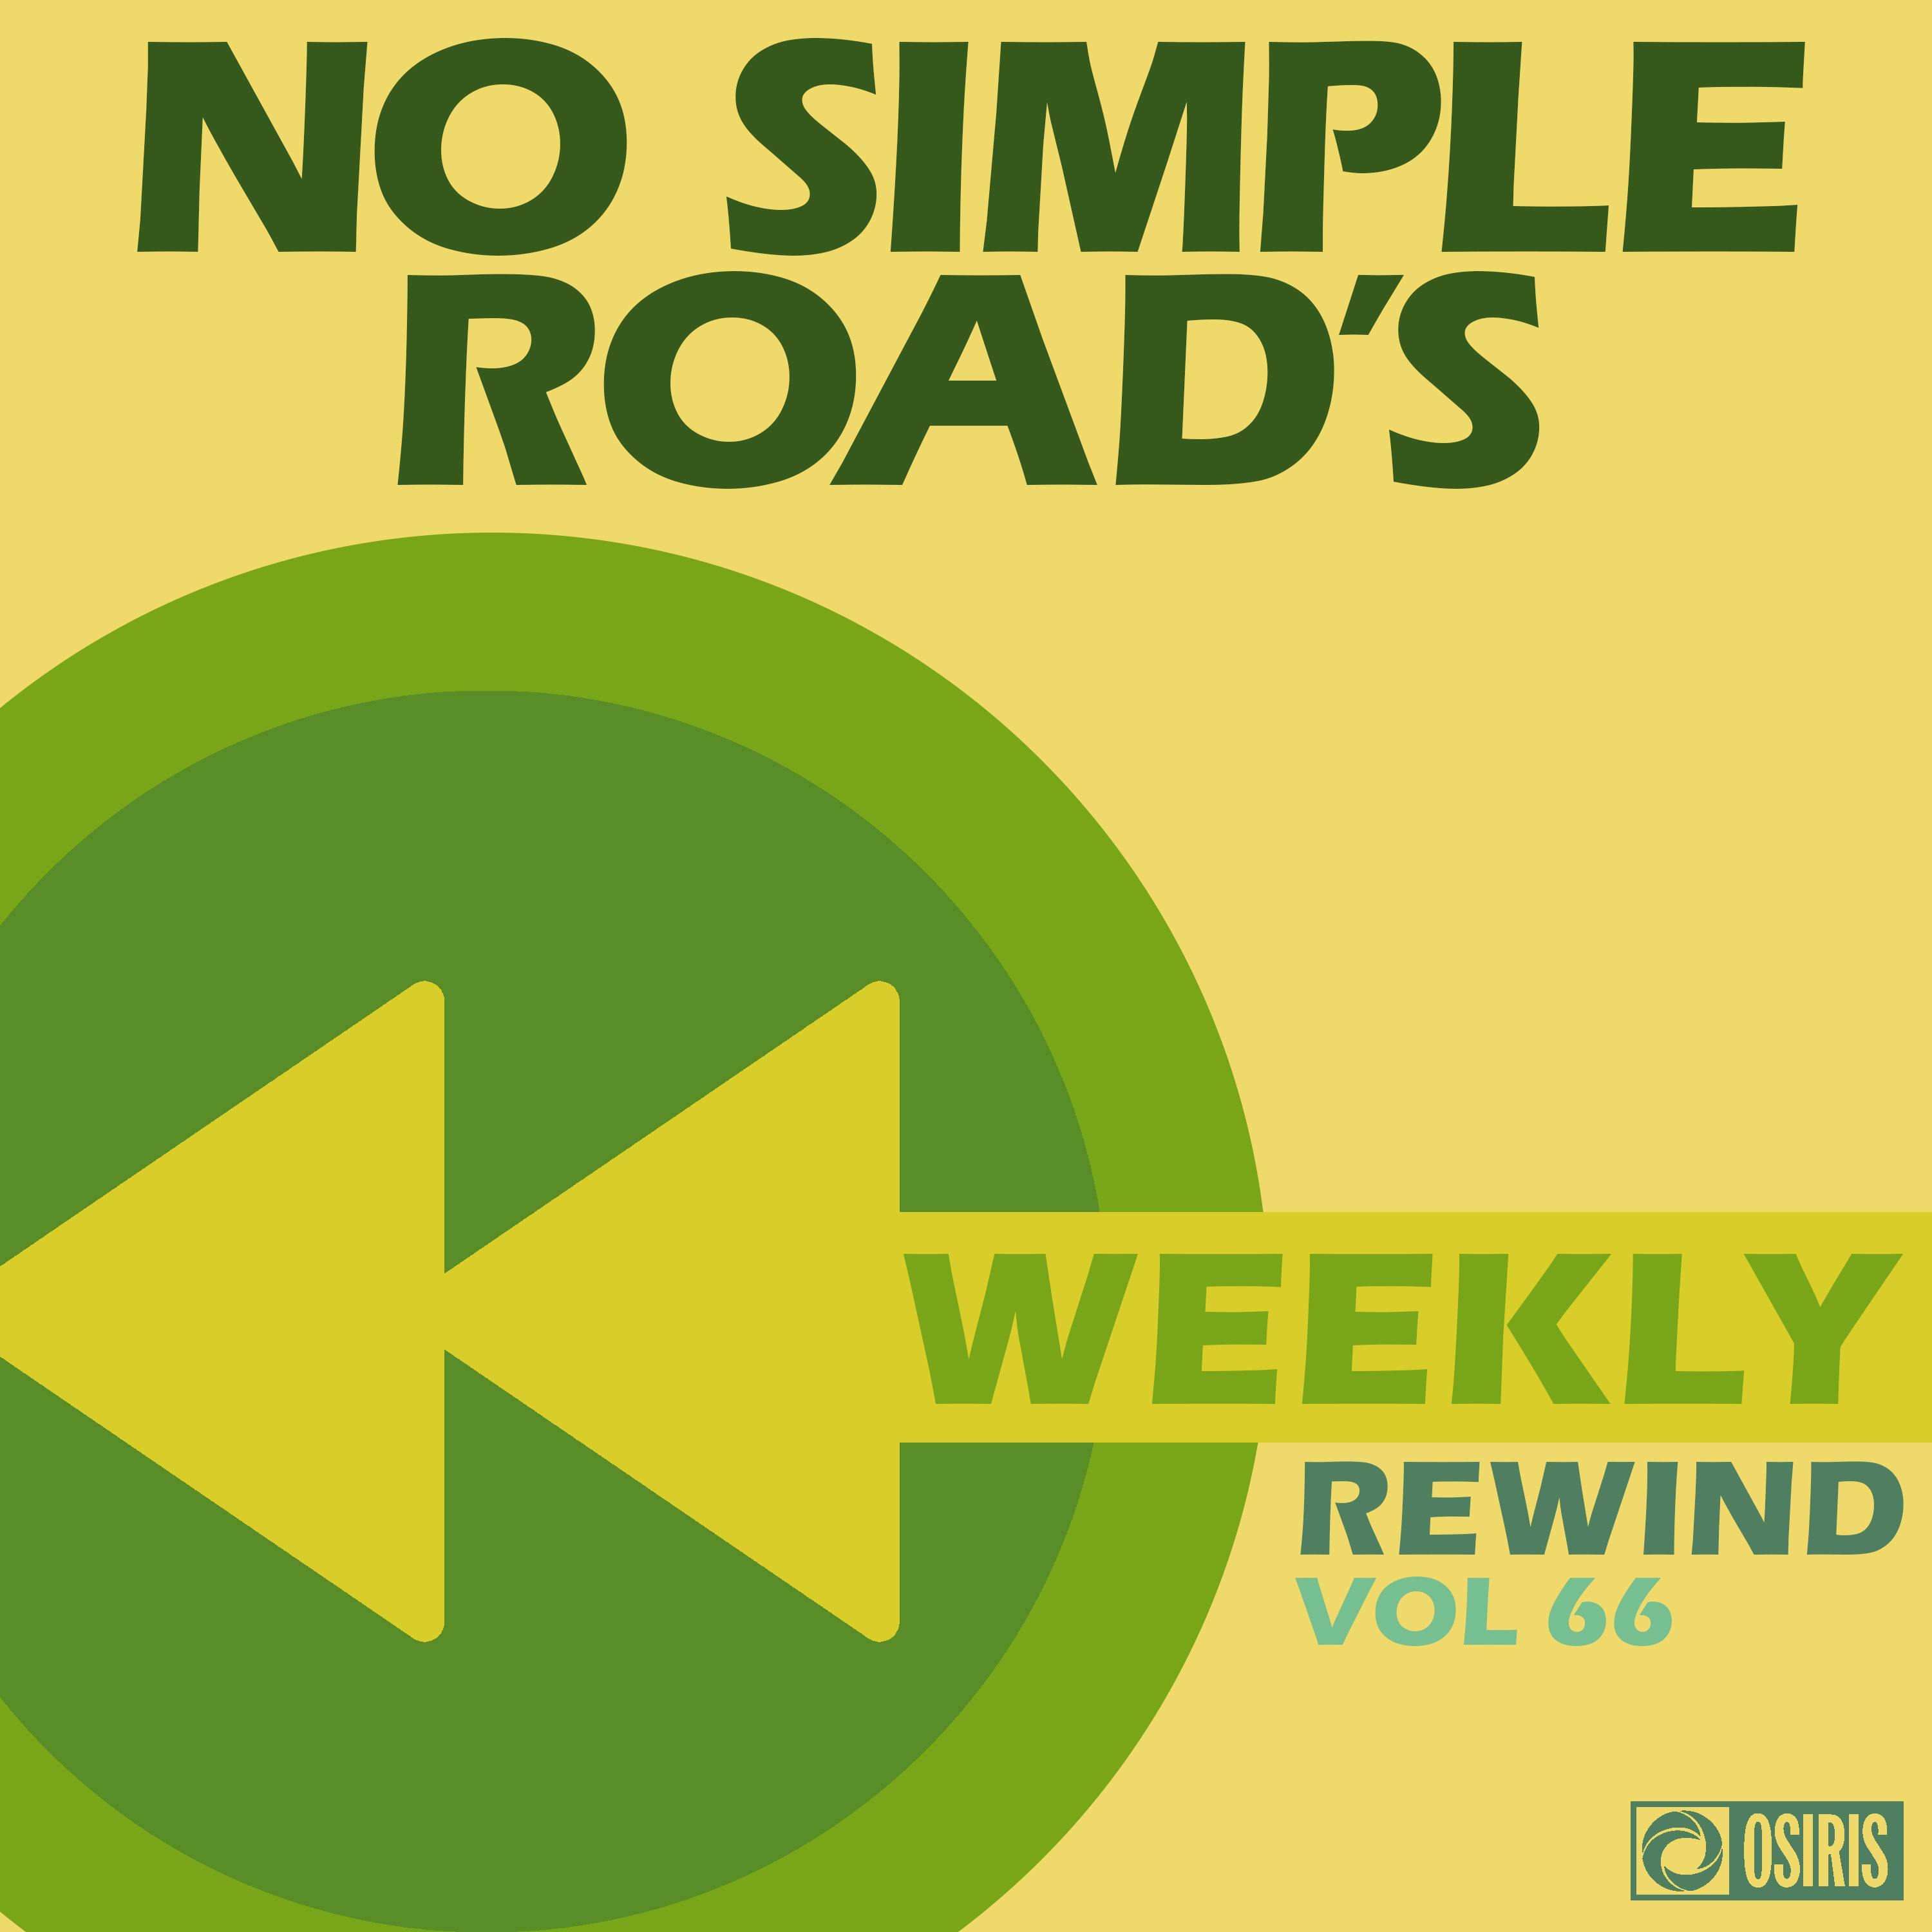 No Simple Road's Weekly Rewind Vol. 66